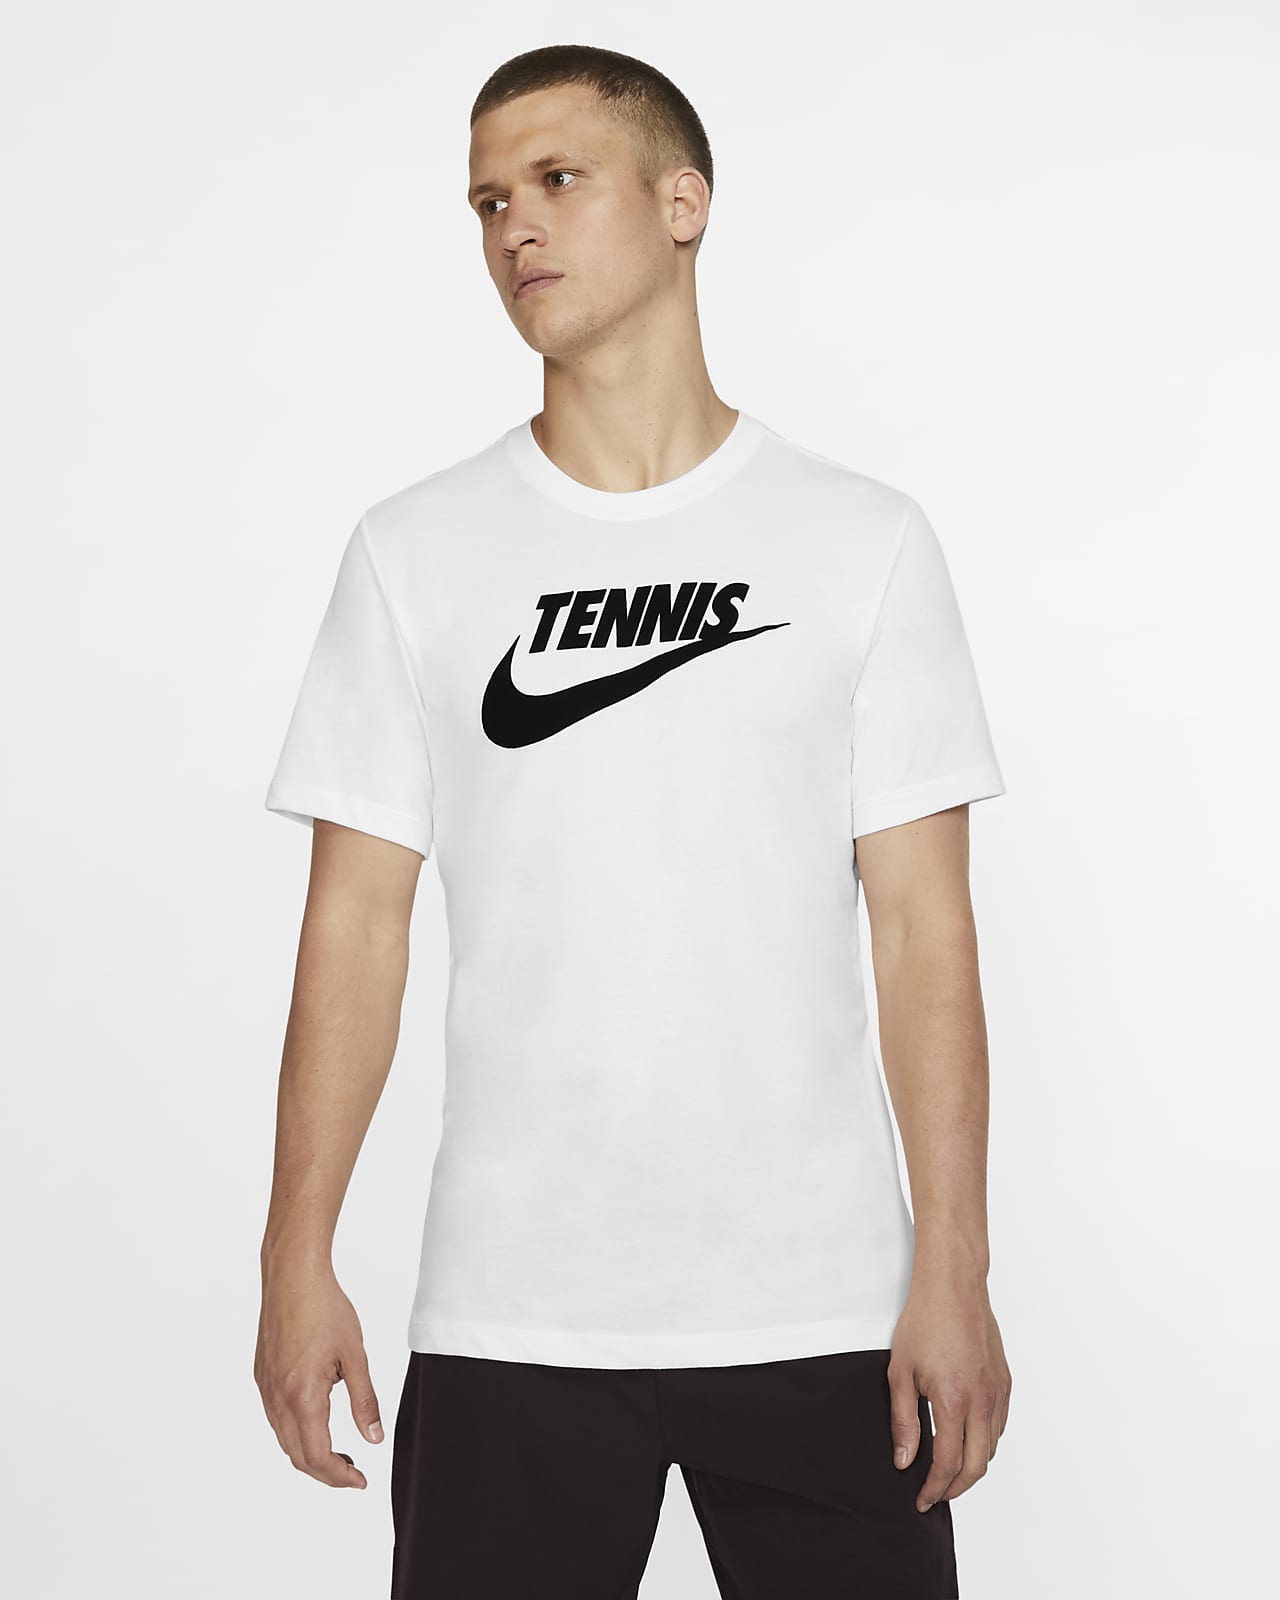 nike tennis tee shirt